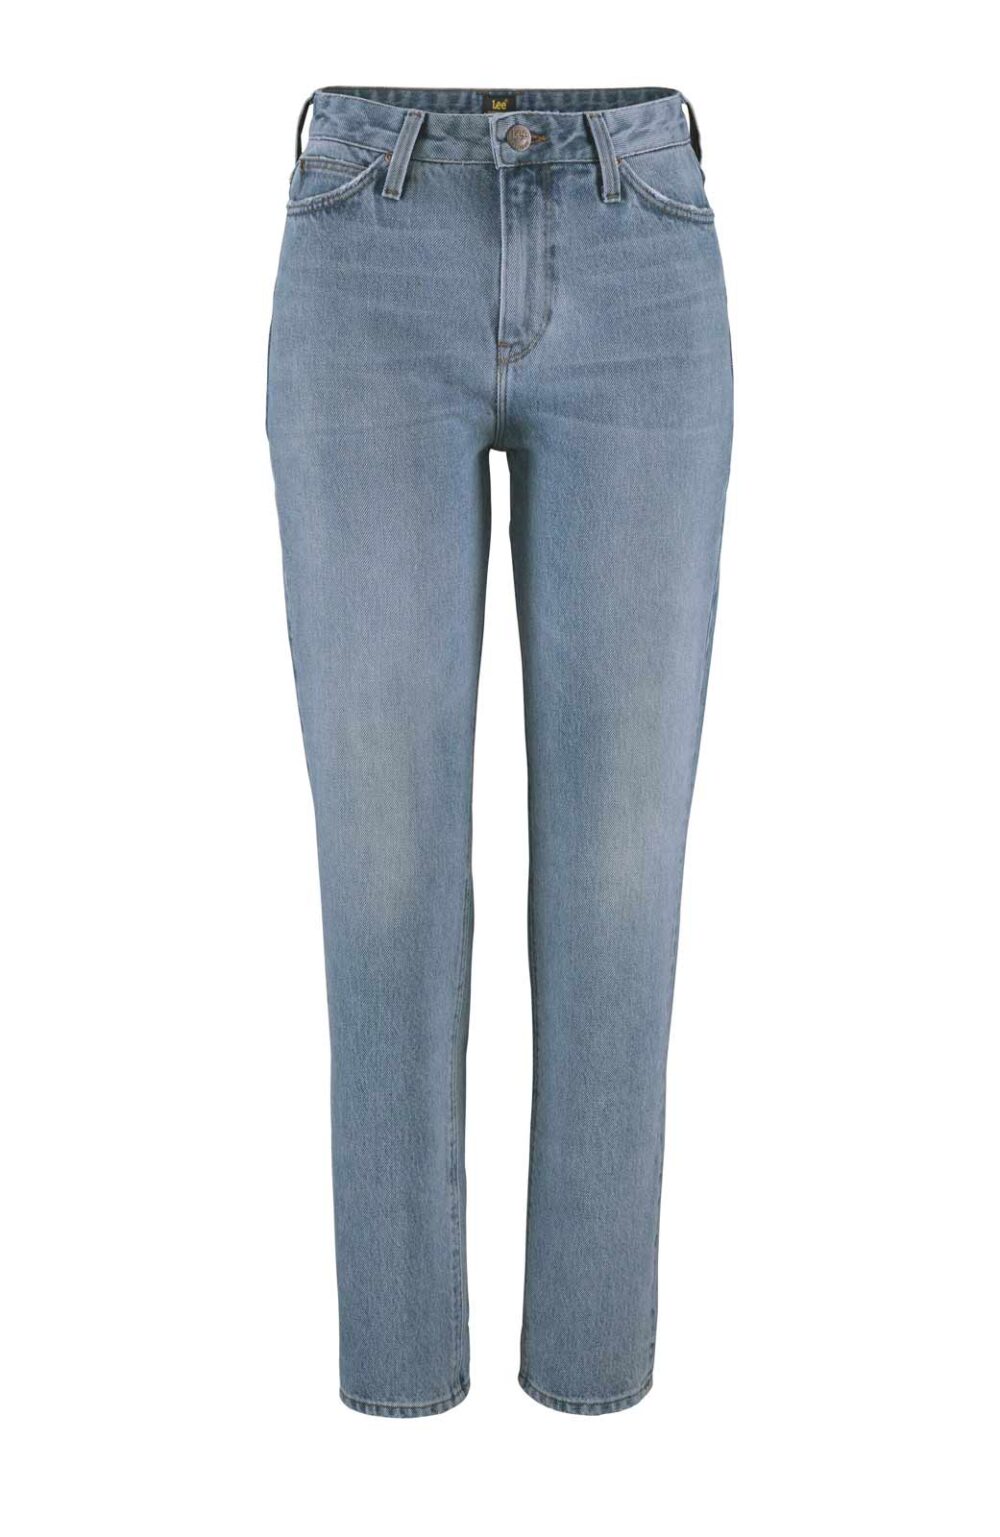 LEE Damen Jeans Hose blau used Deinim Mom Straigt High Waist Missforty Online kaufen